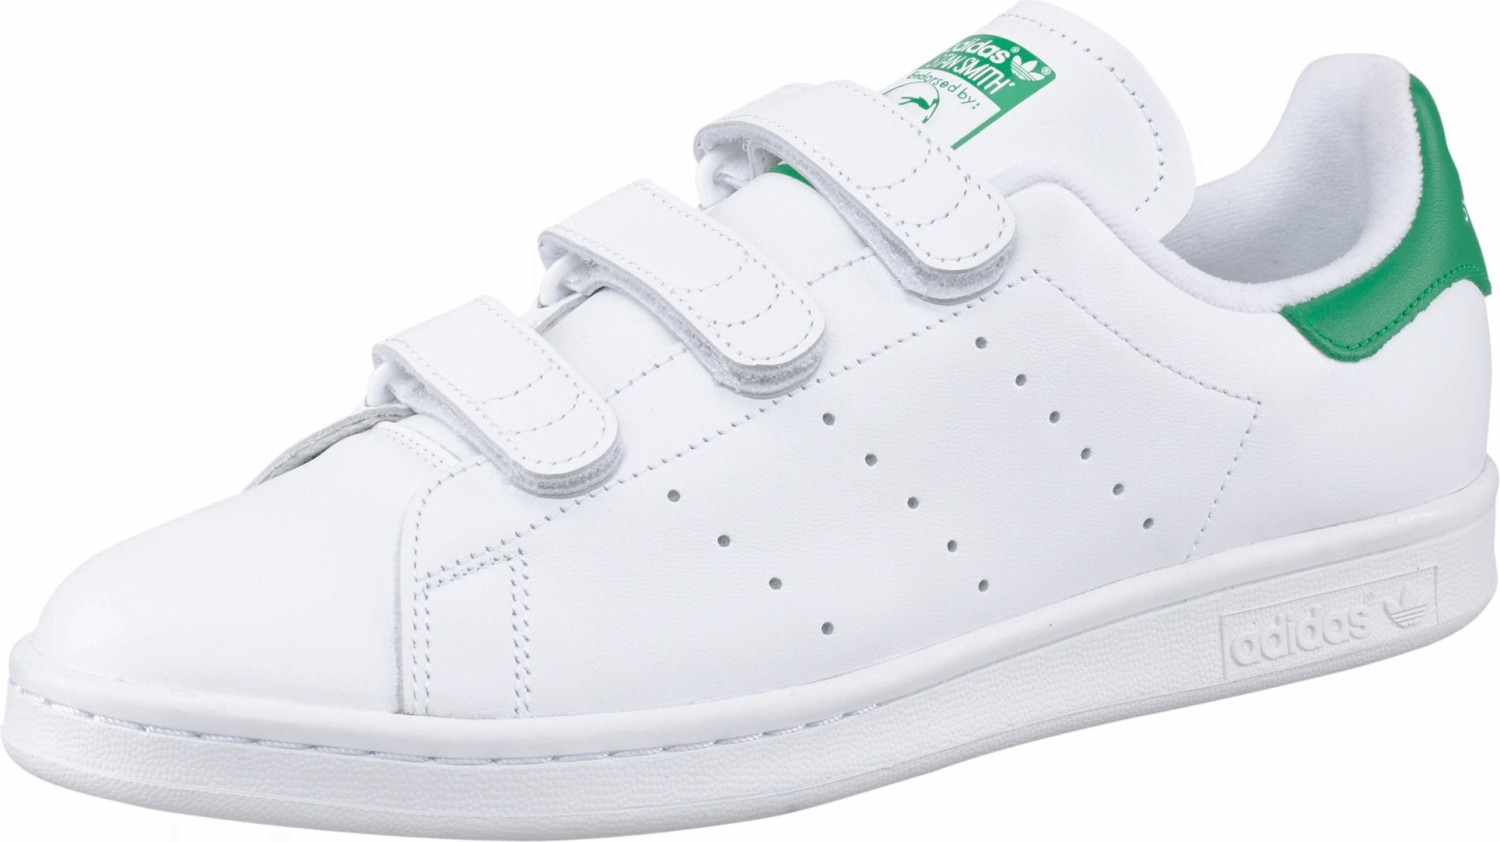 Adidas Stan Smith CF white/green (S75187)